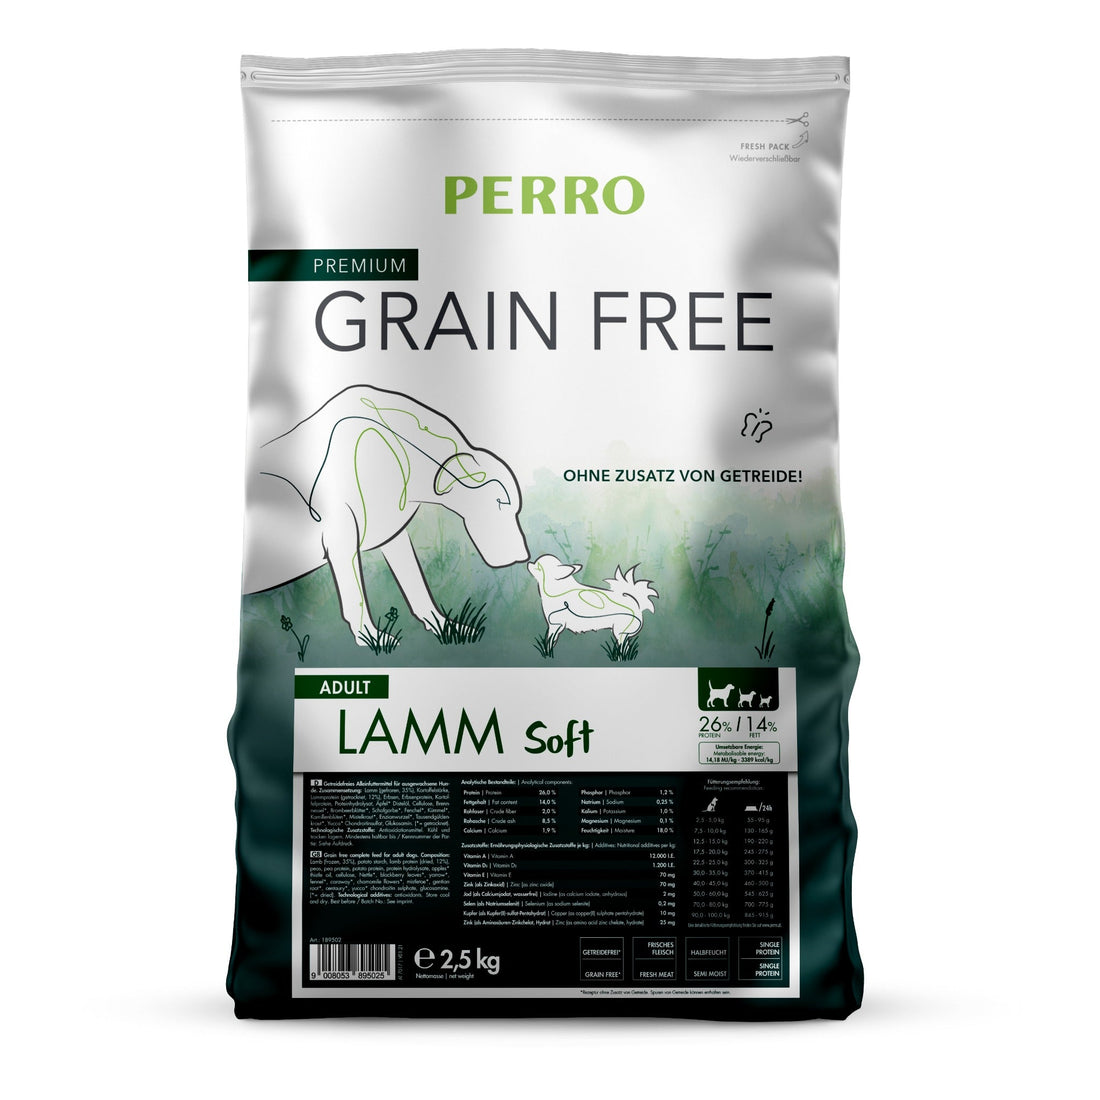 Perro Grain Free Adult Lamm Soft - Hunde Trockenfutter - Woofshack